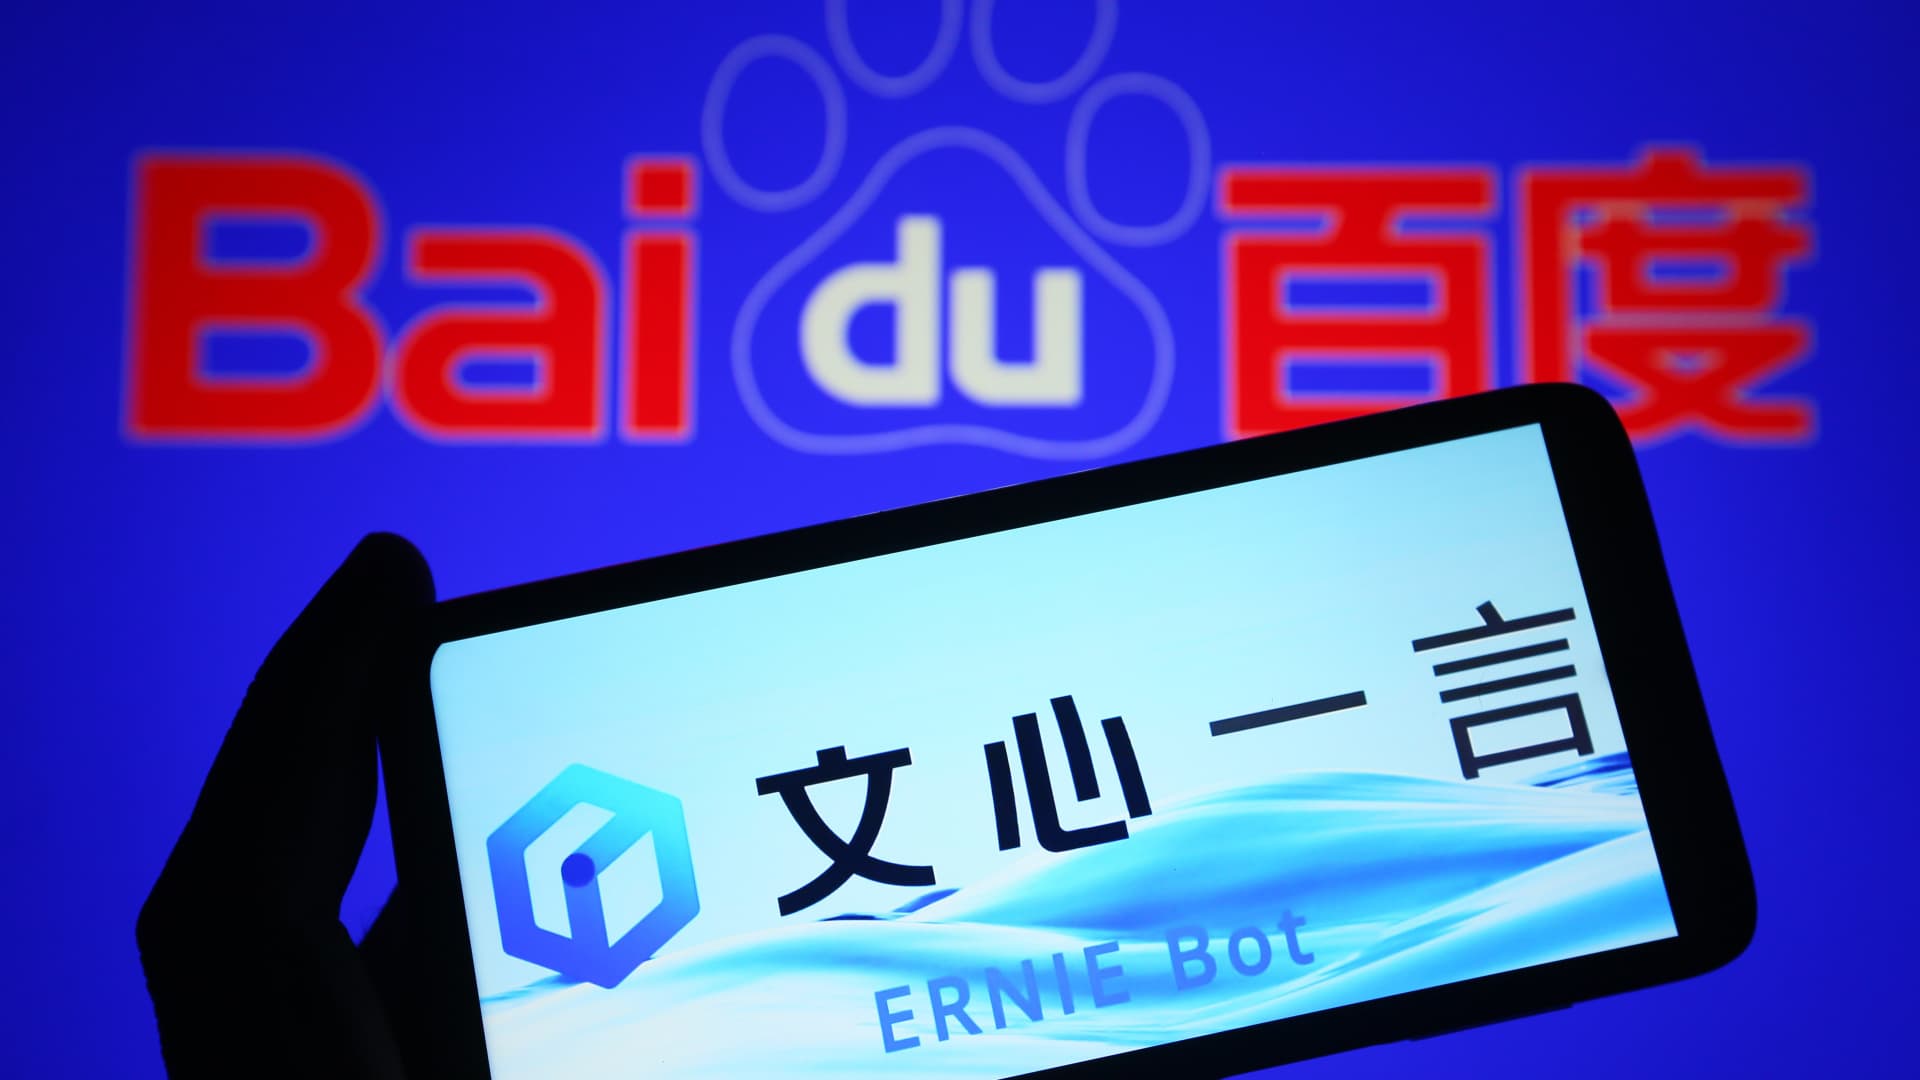 Baidu zaprezentowało dziesięć nowych aplikacji opartych na sztucznej inteligencji po publicznym uruchomieniu chatbota Ernie.